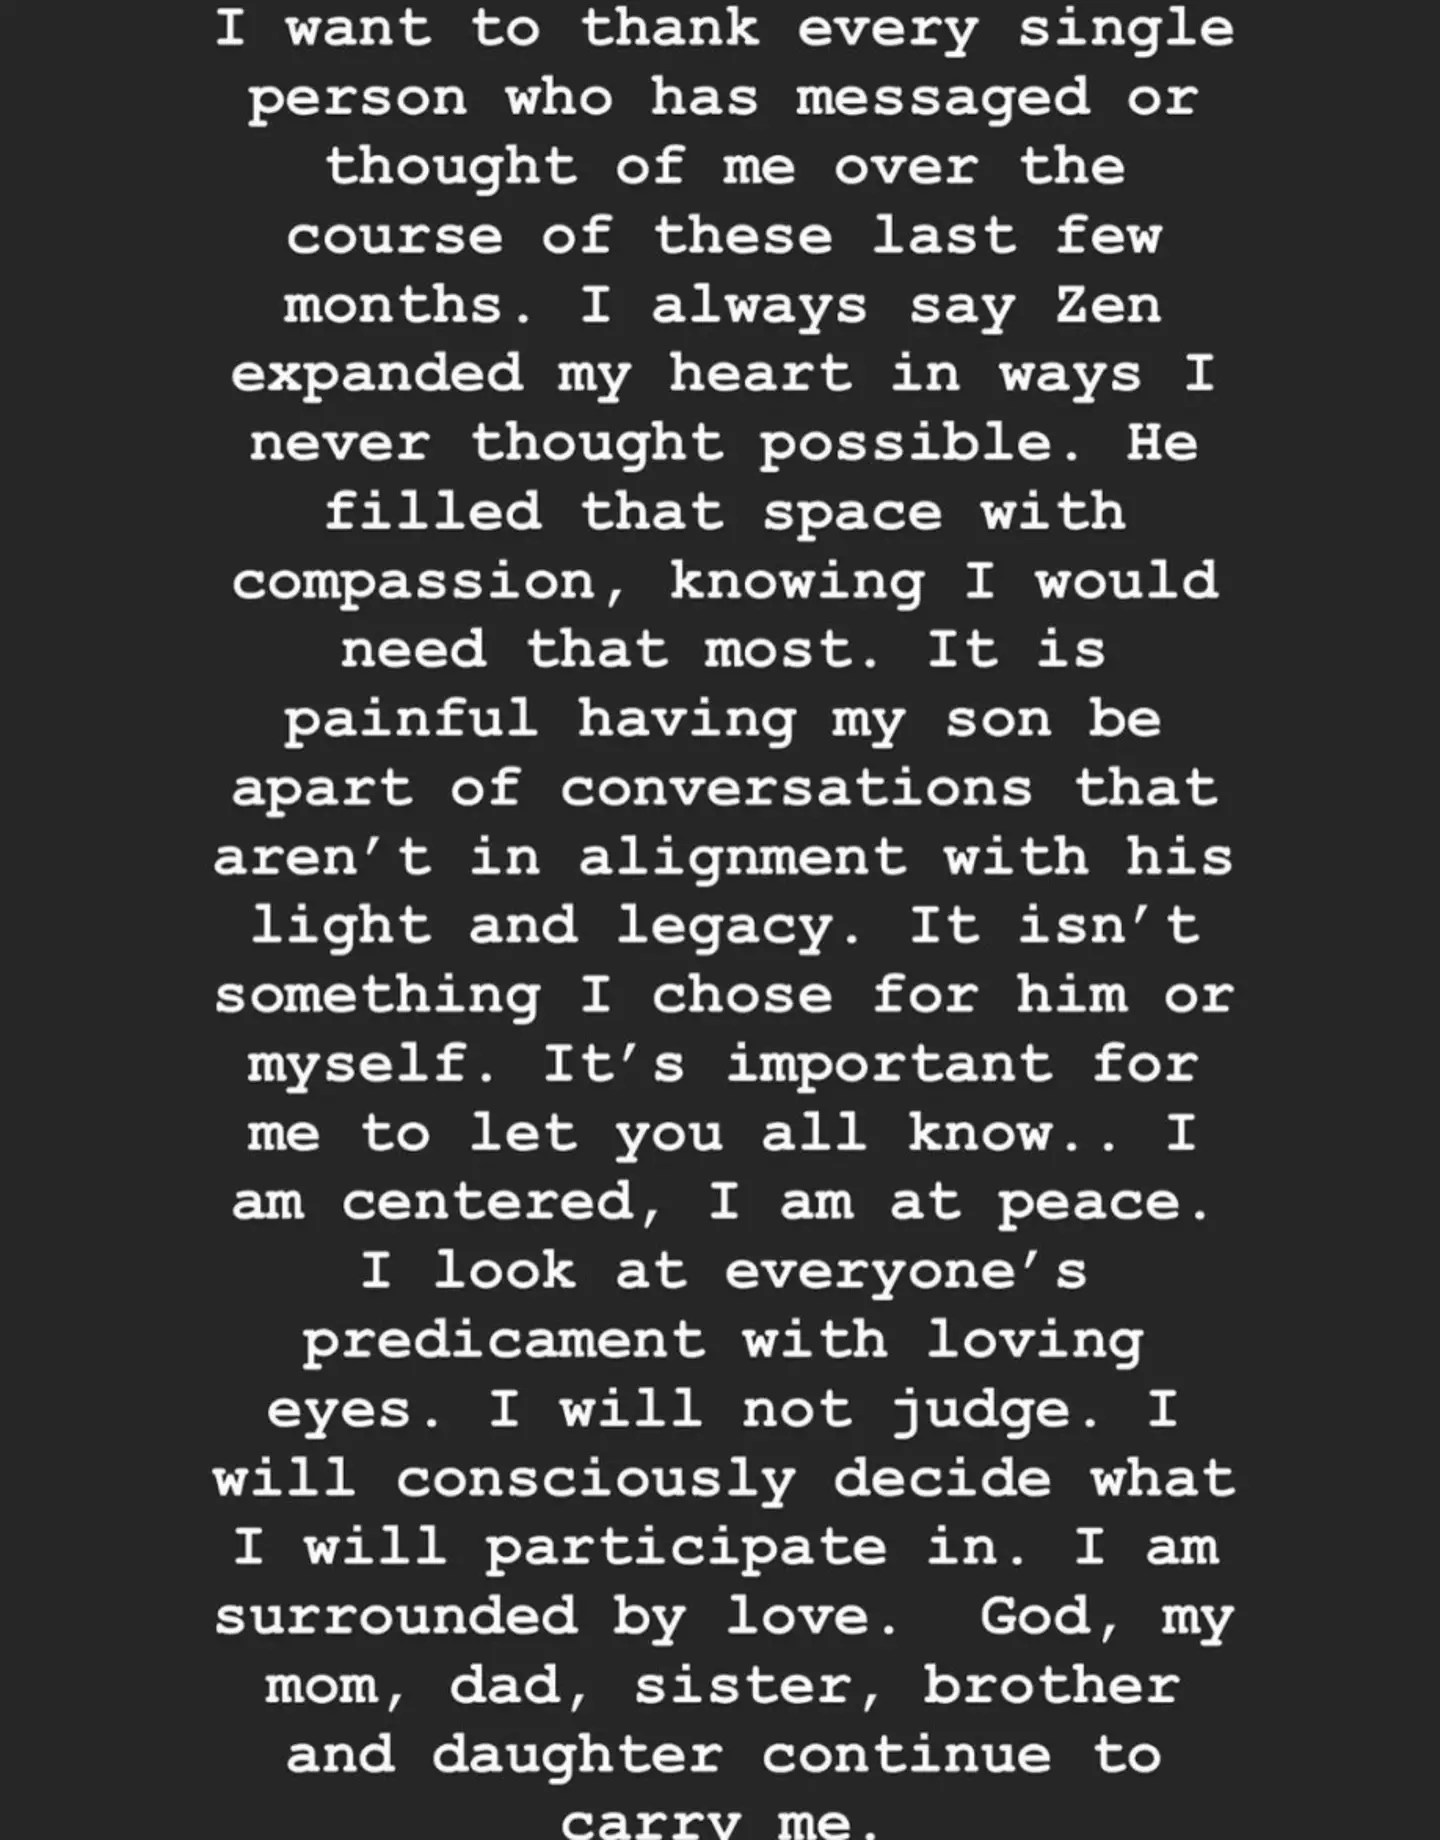 Alyssa Scott posted a statement on Instagram (